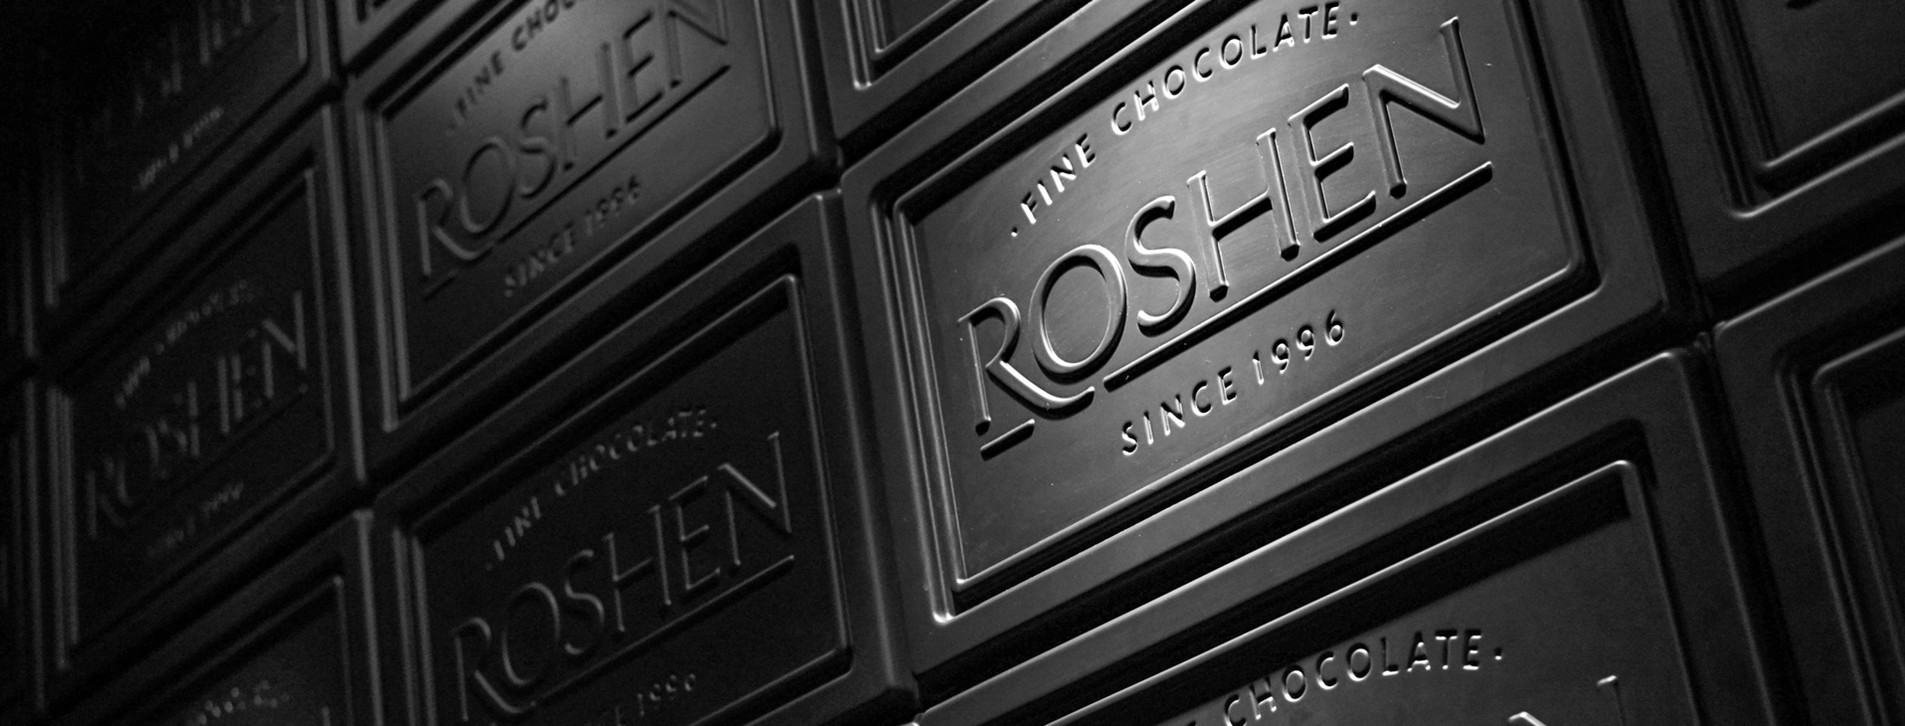 Фото 1 - Экскурсия на шоколадную фабрику Roshen для двоих